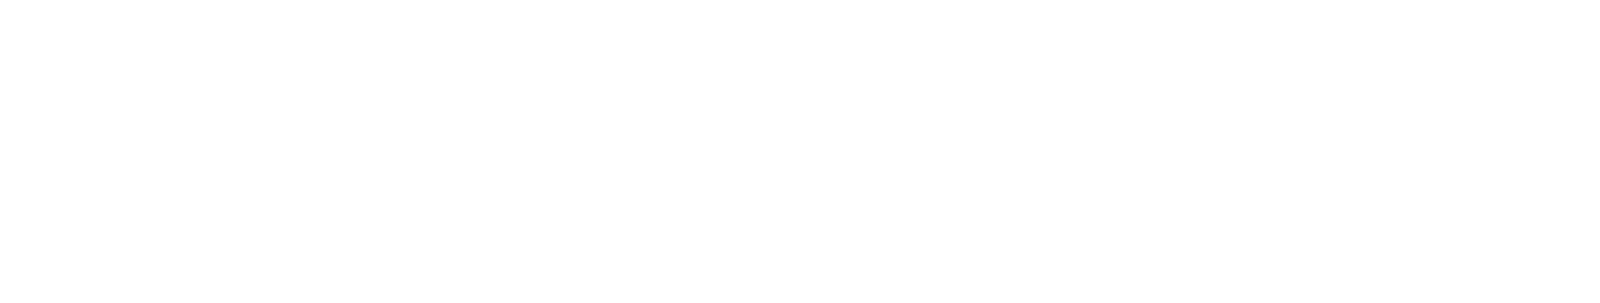 Westpac Banking Logo groß für dunkle Hintergründe (transparentes PNG)